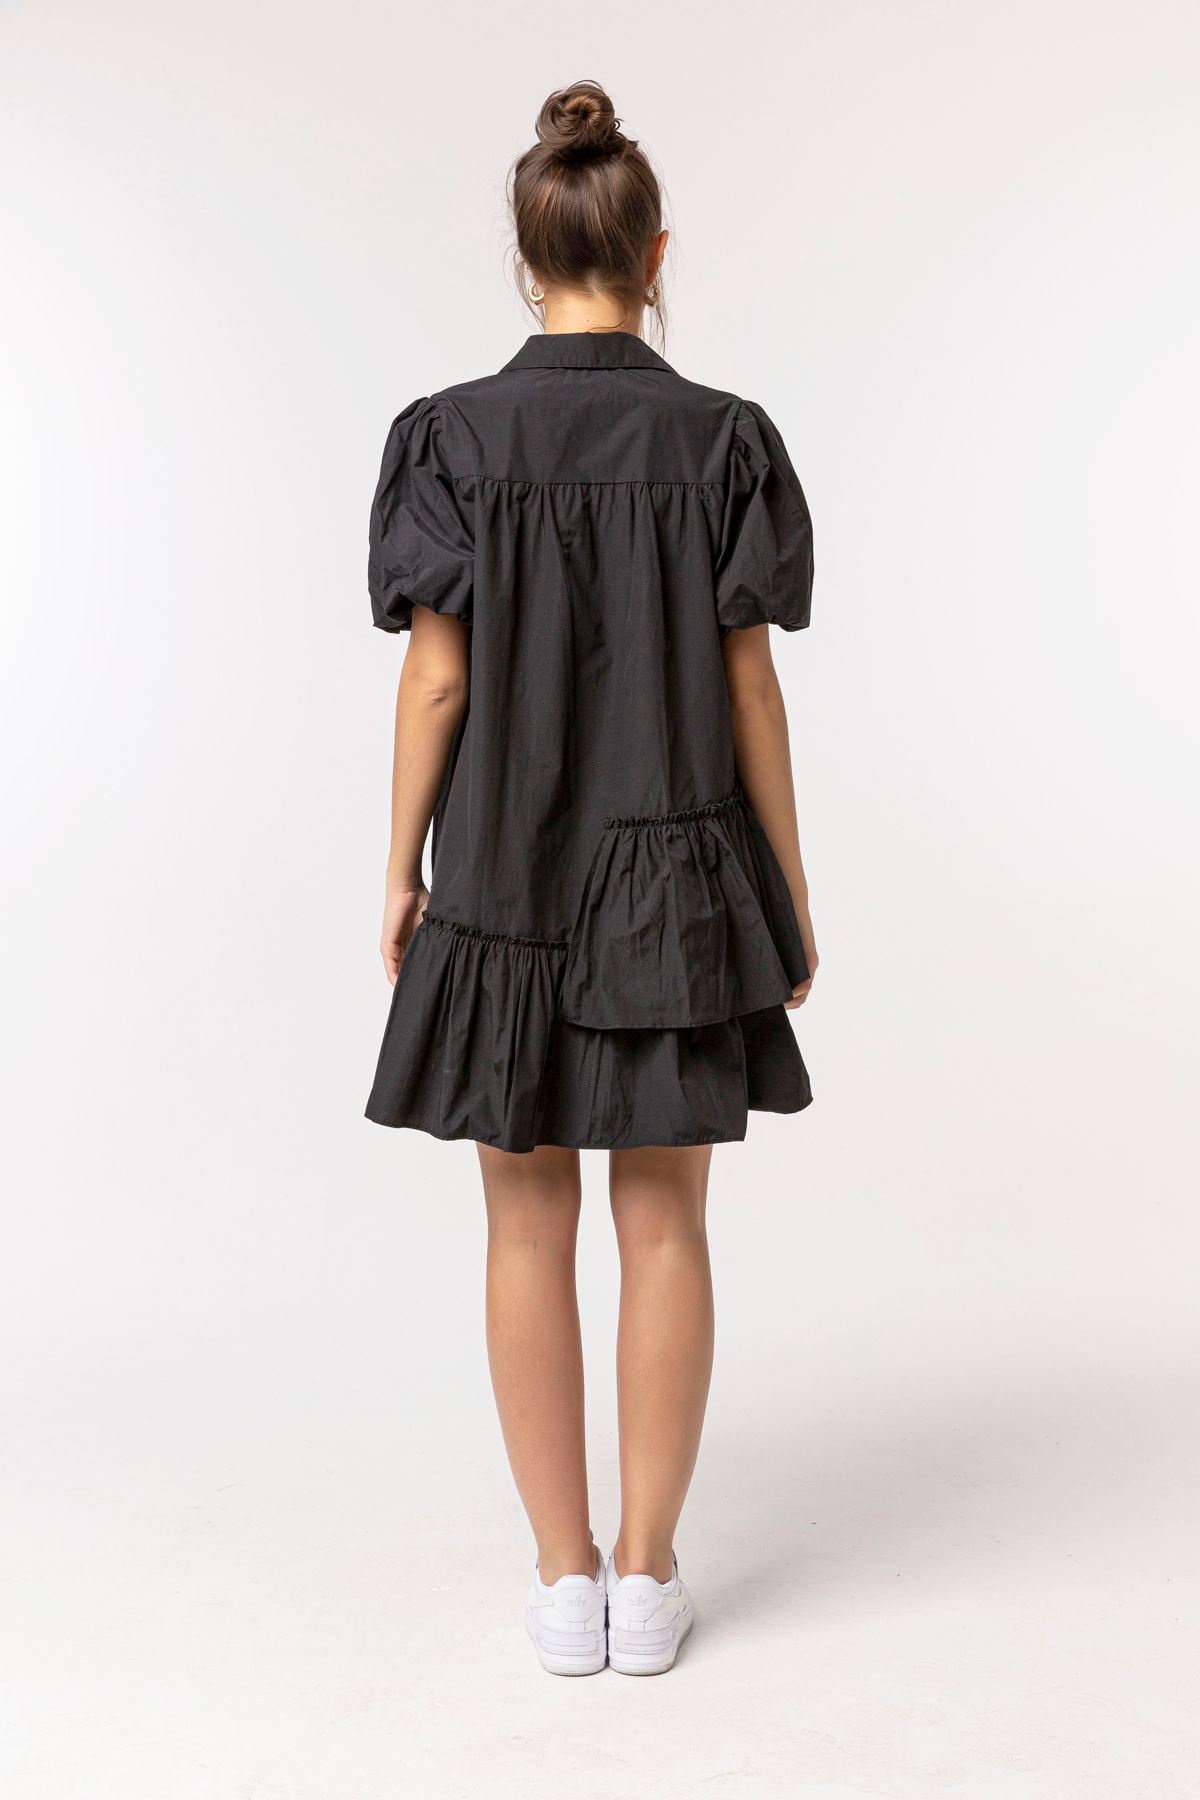 Soft Fabric Short Sleeve Shirt Collar Oversize Full Fit Women Dress - Black